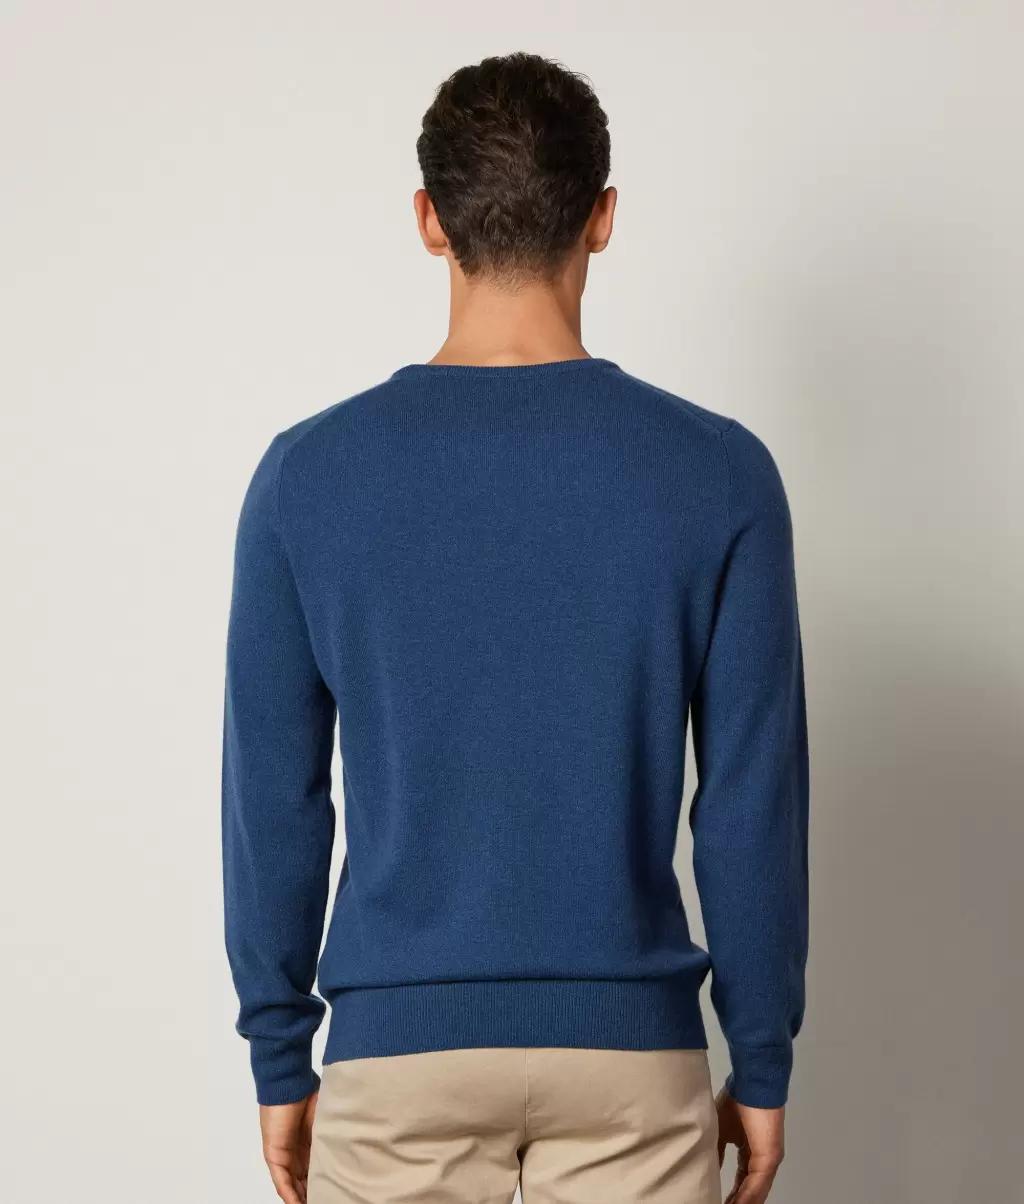 Swetry Z Okrągłym Dekoltem Mężczyzna Pulower Z Kaszmiru Ultrasoft Blue Falconeri - 2